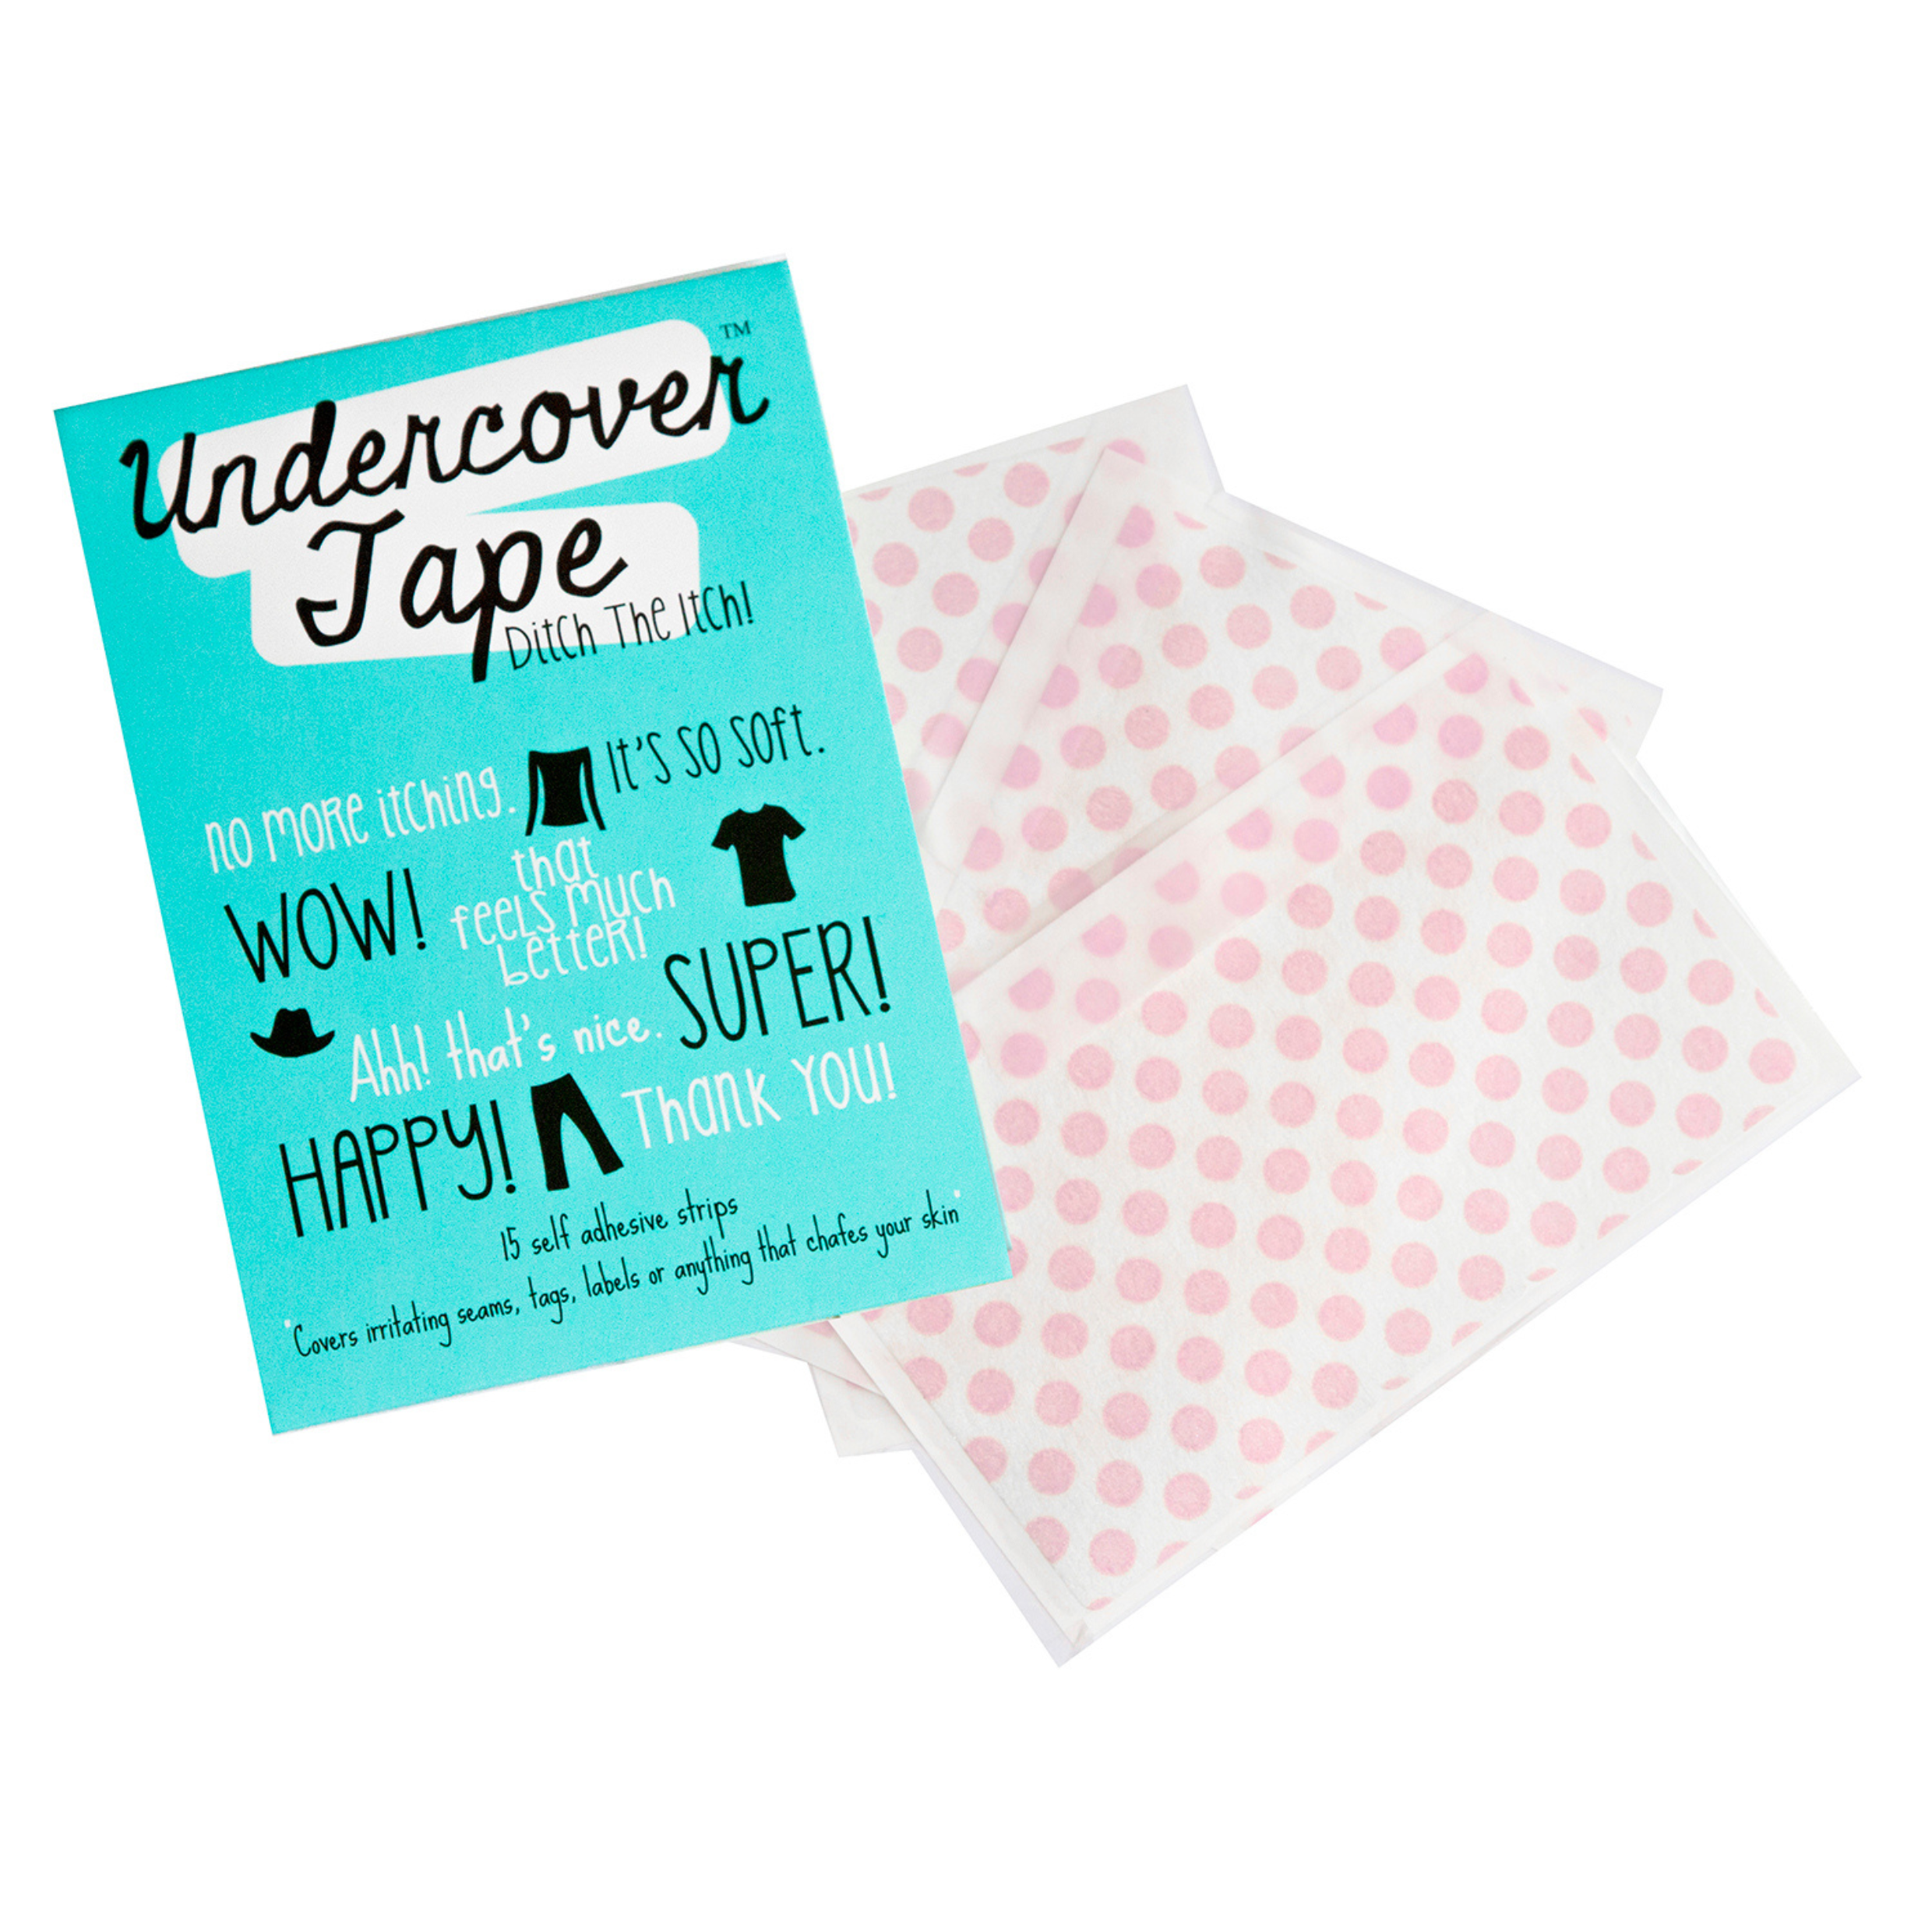 Undercover tape pack  pre cut